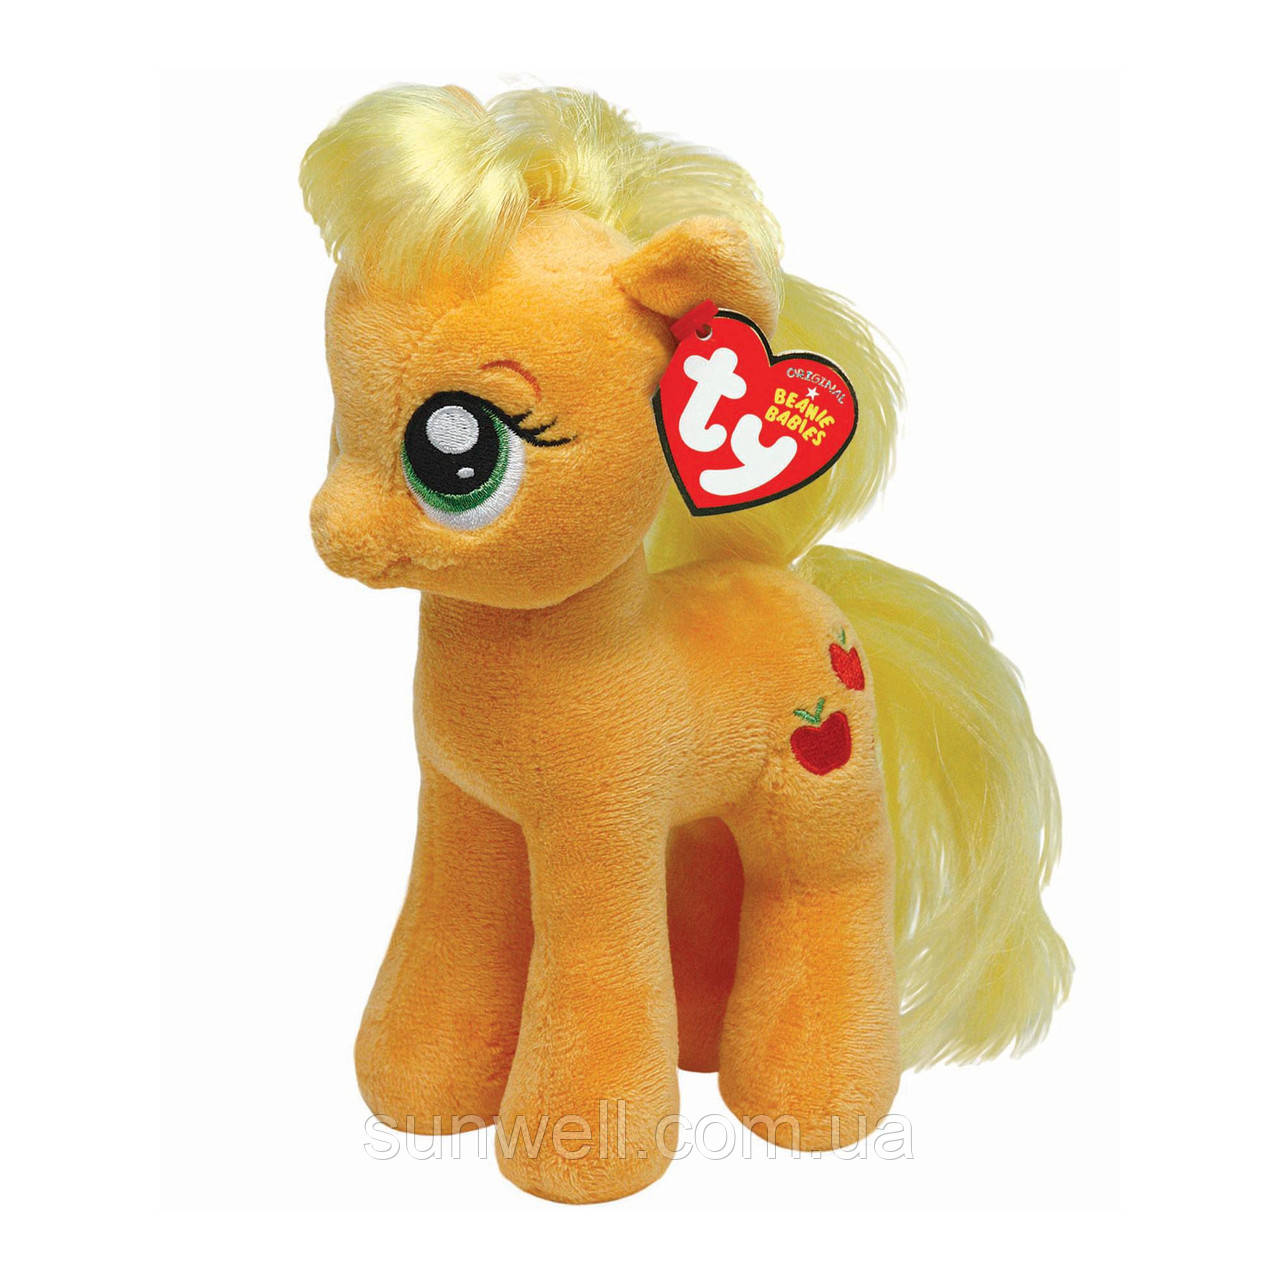 TY My little pony Applejack, 20см